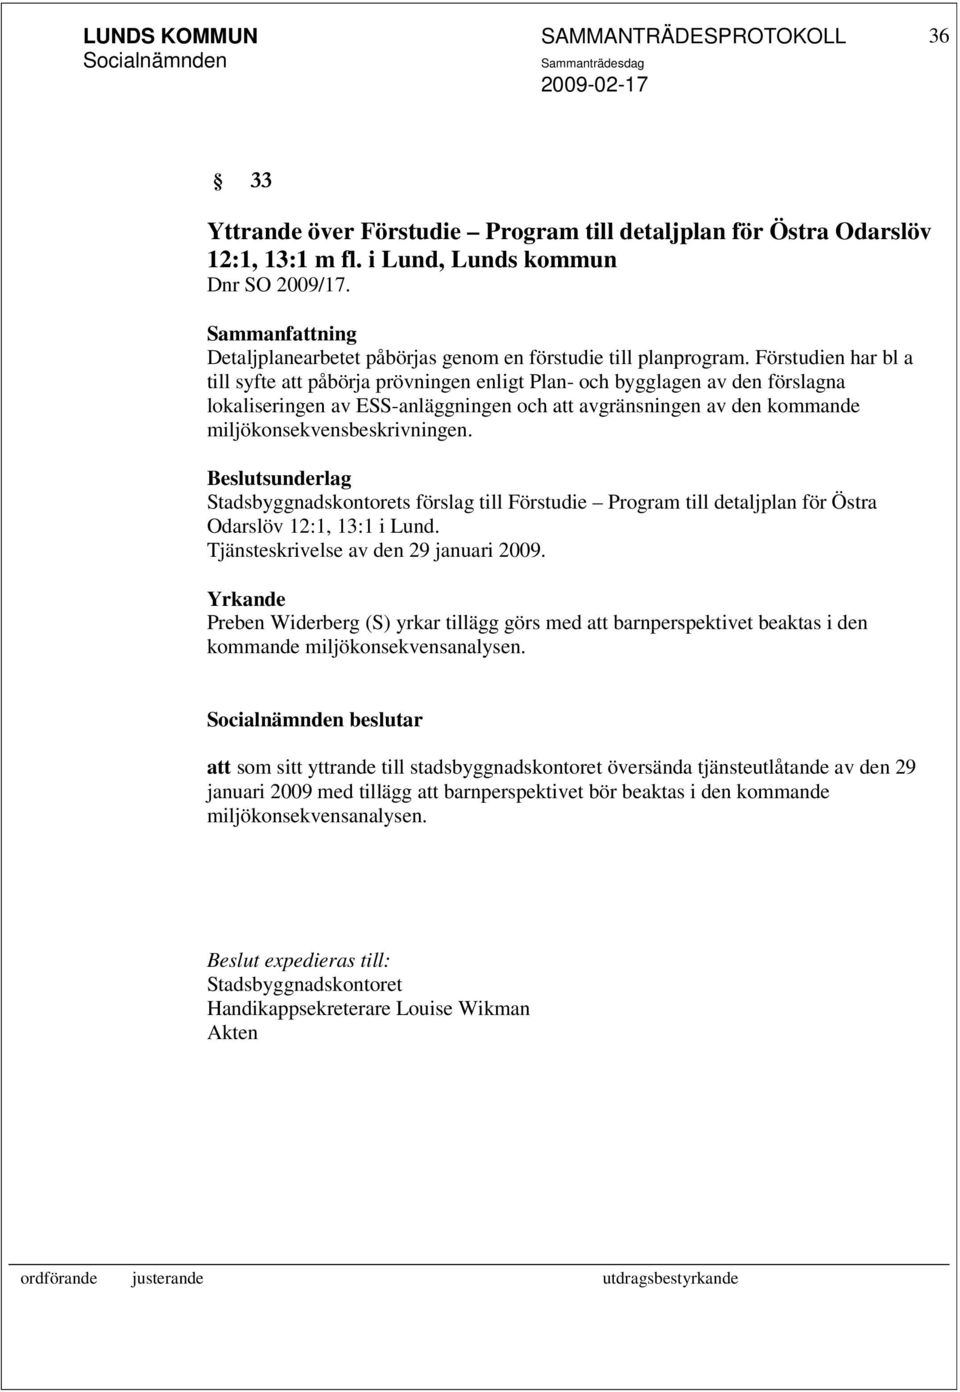 Stadsbyggnadskontorets förslag till Förstudie Program till detaljplan för Östra Odarslöv 12:1, 13:1 i Lund. Tjänsteskrivelse av den 29 januari 2009.